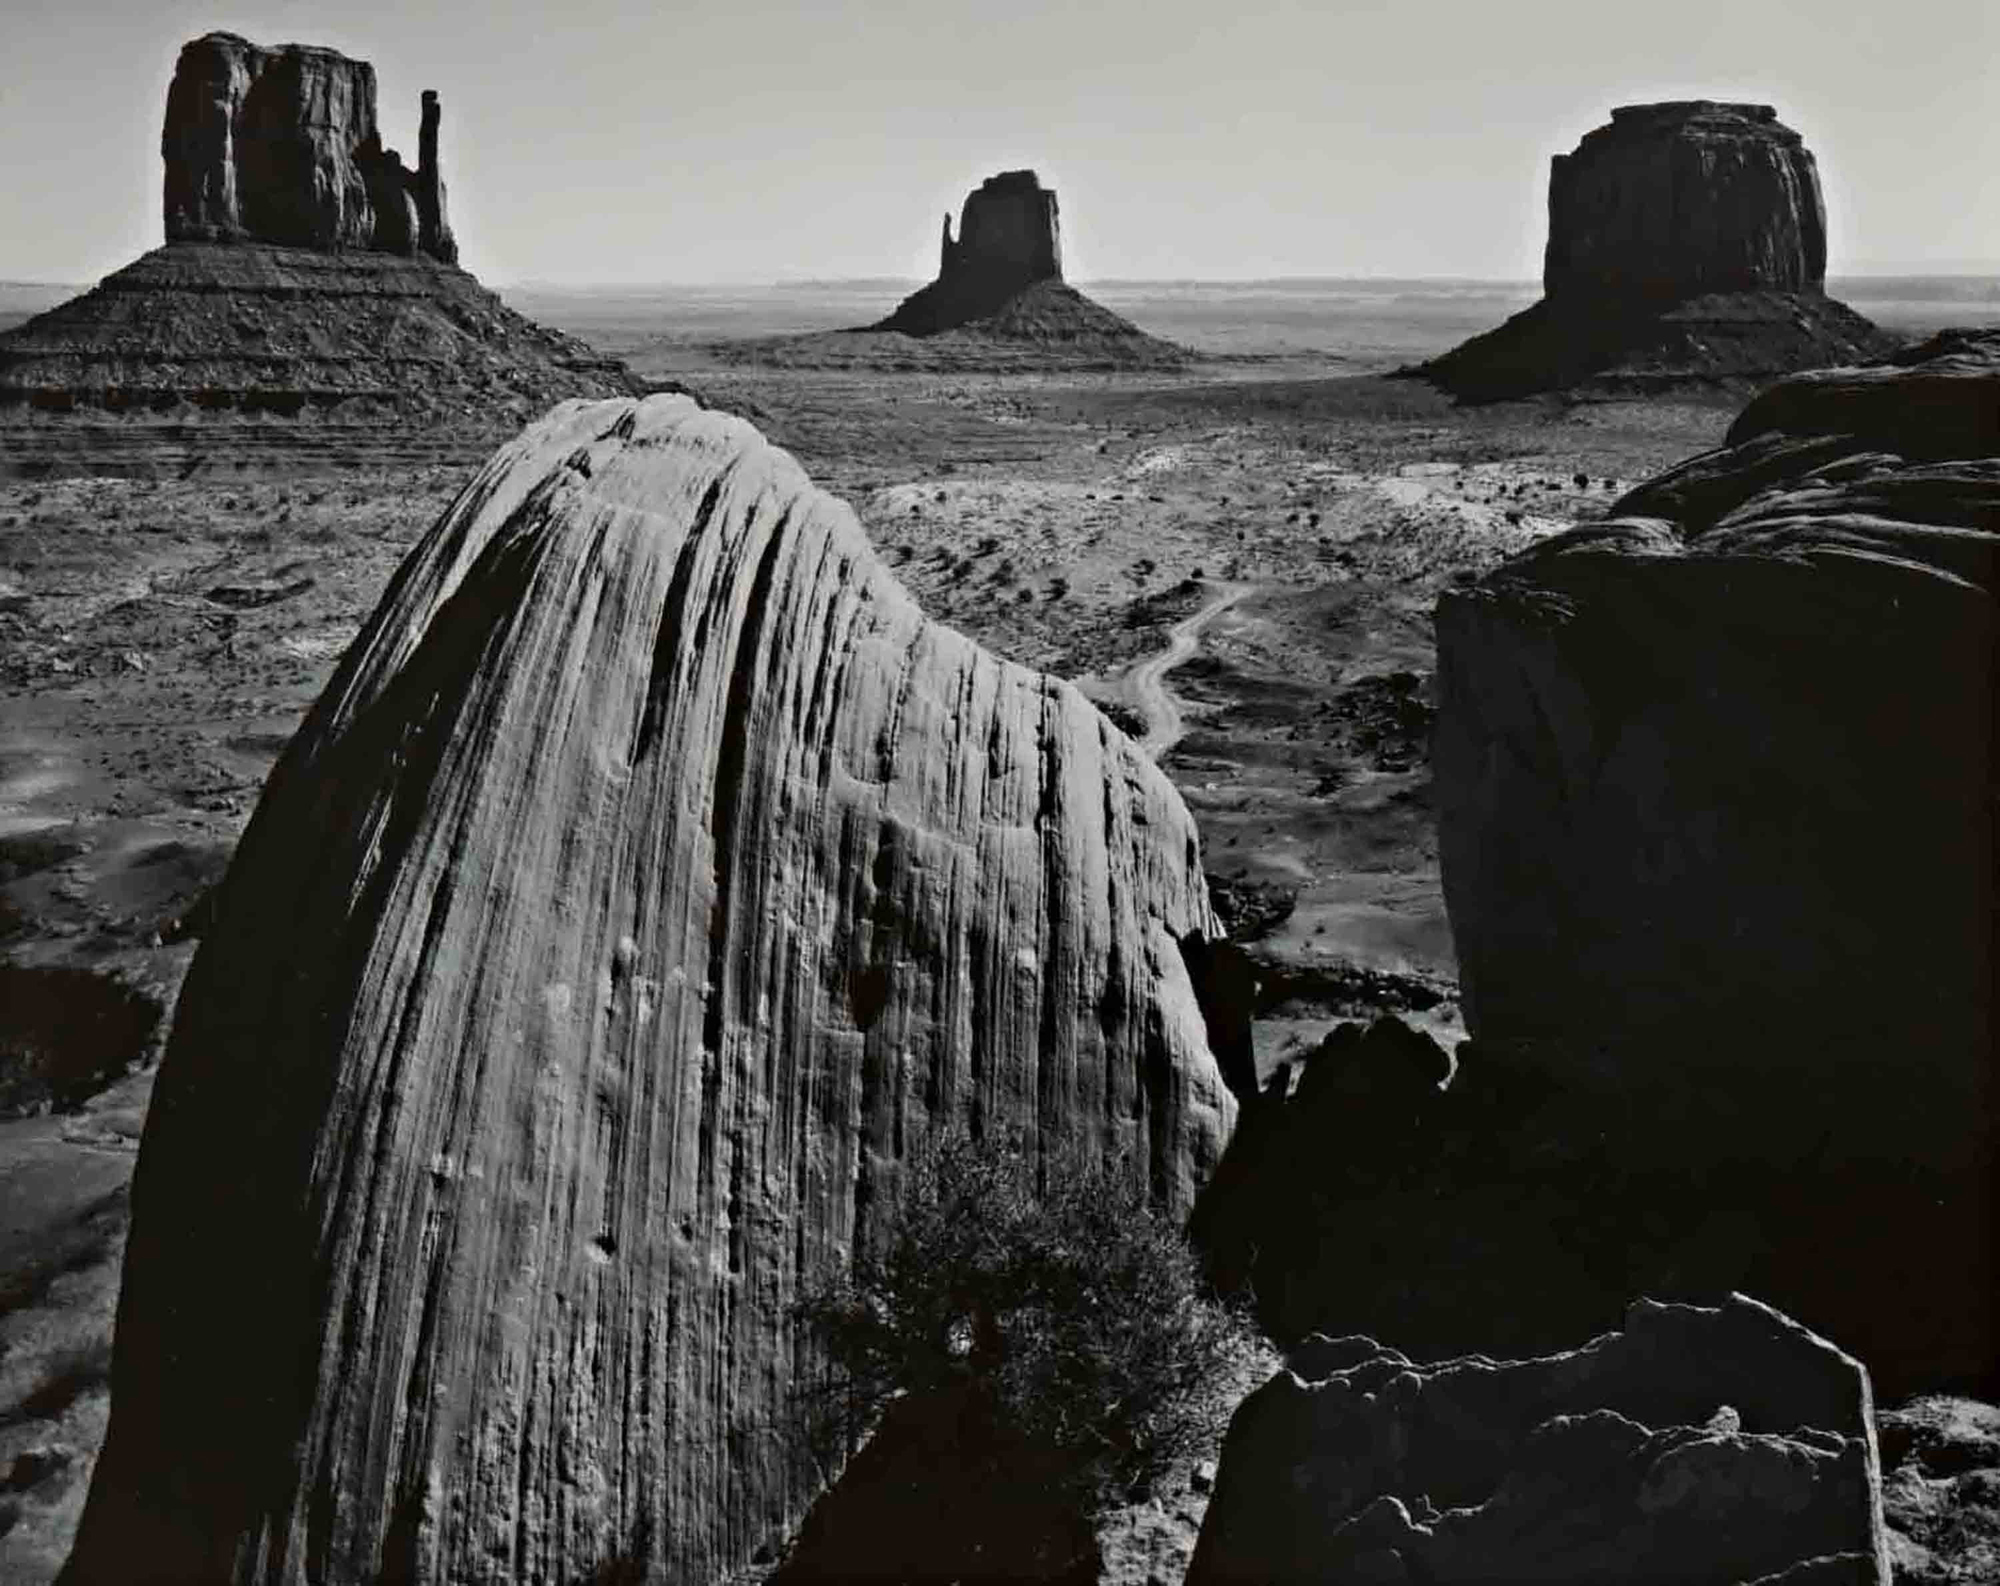 Ansel Adams, Monument Valley, Utah, 1958